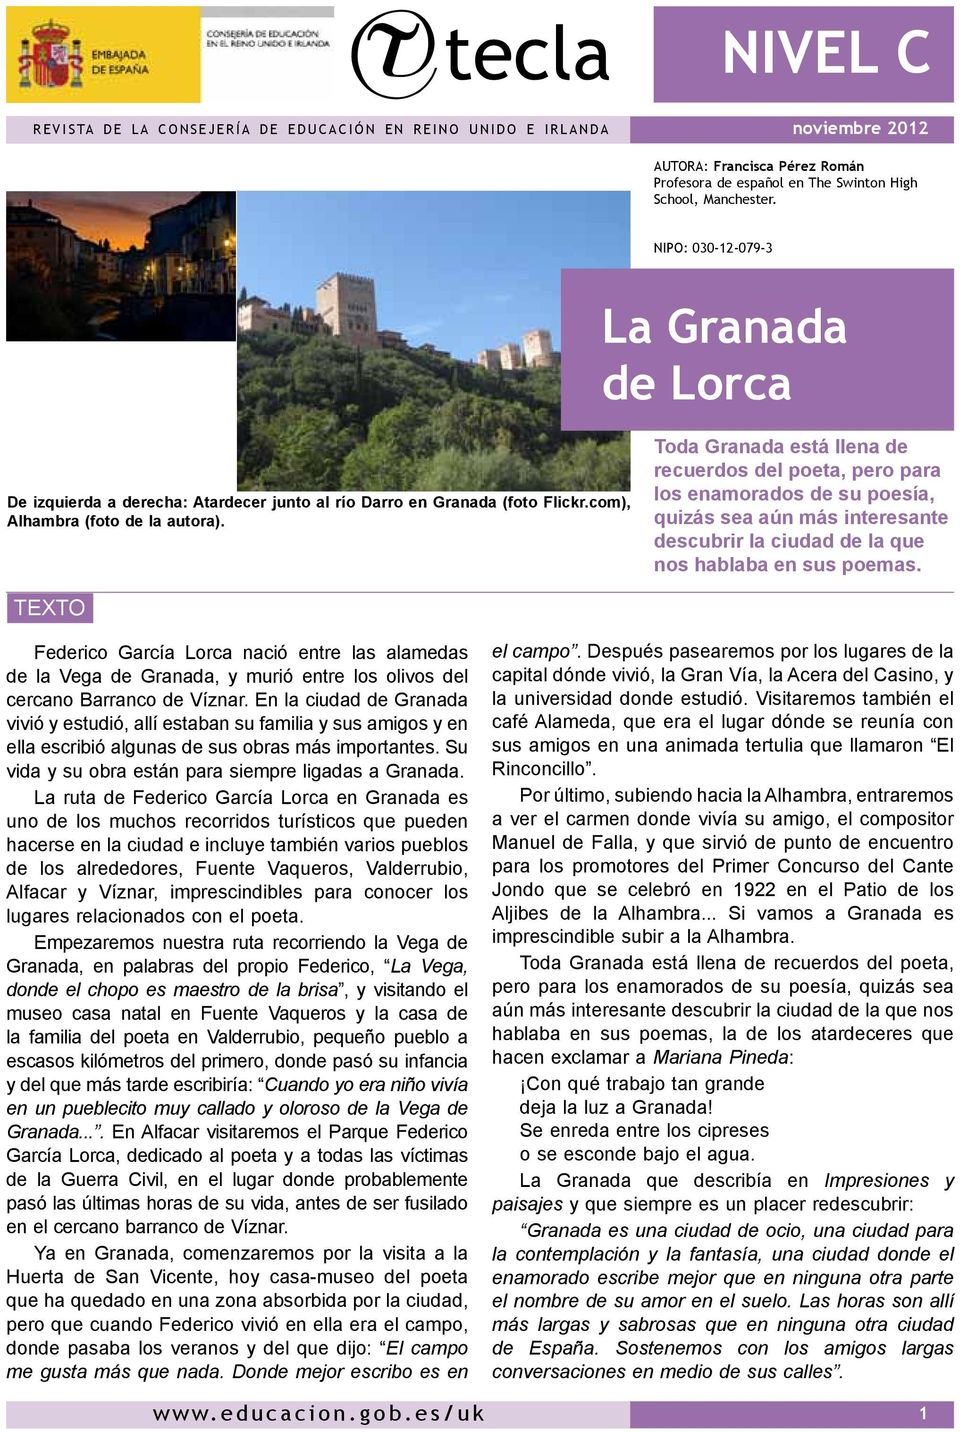 Toda Granada está llena de recuerdos del poeta, pero para los enamorados de su poesía, quizás sea aún más interesante descubrir la ciudad de la que nos hablaba en sus poemas.